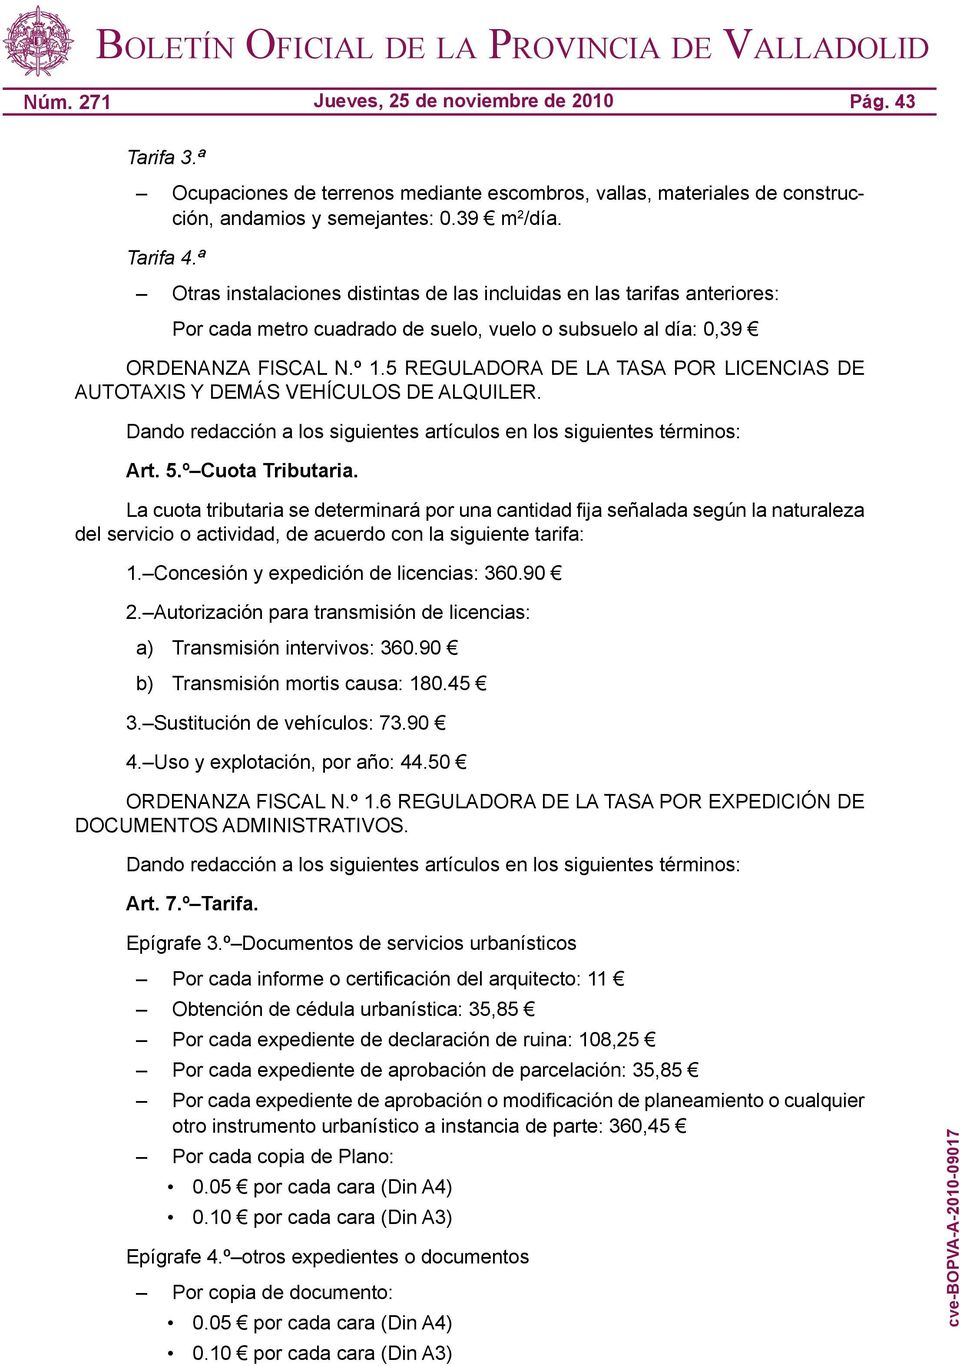 5 REGULADORA DE LA TASA POR LICENCIAS DE AUTOTAXIS Y DEMÁS VEHÍCULOS DE ALQUILER. Art. 5.º Cuota Tributaria.